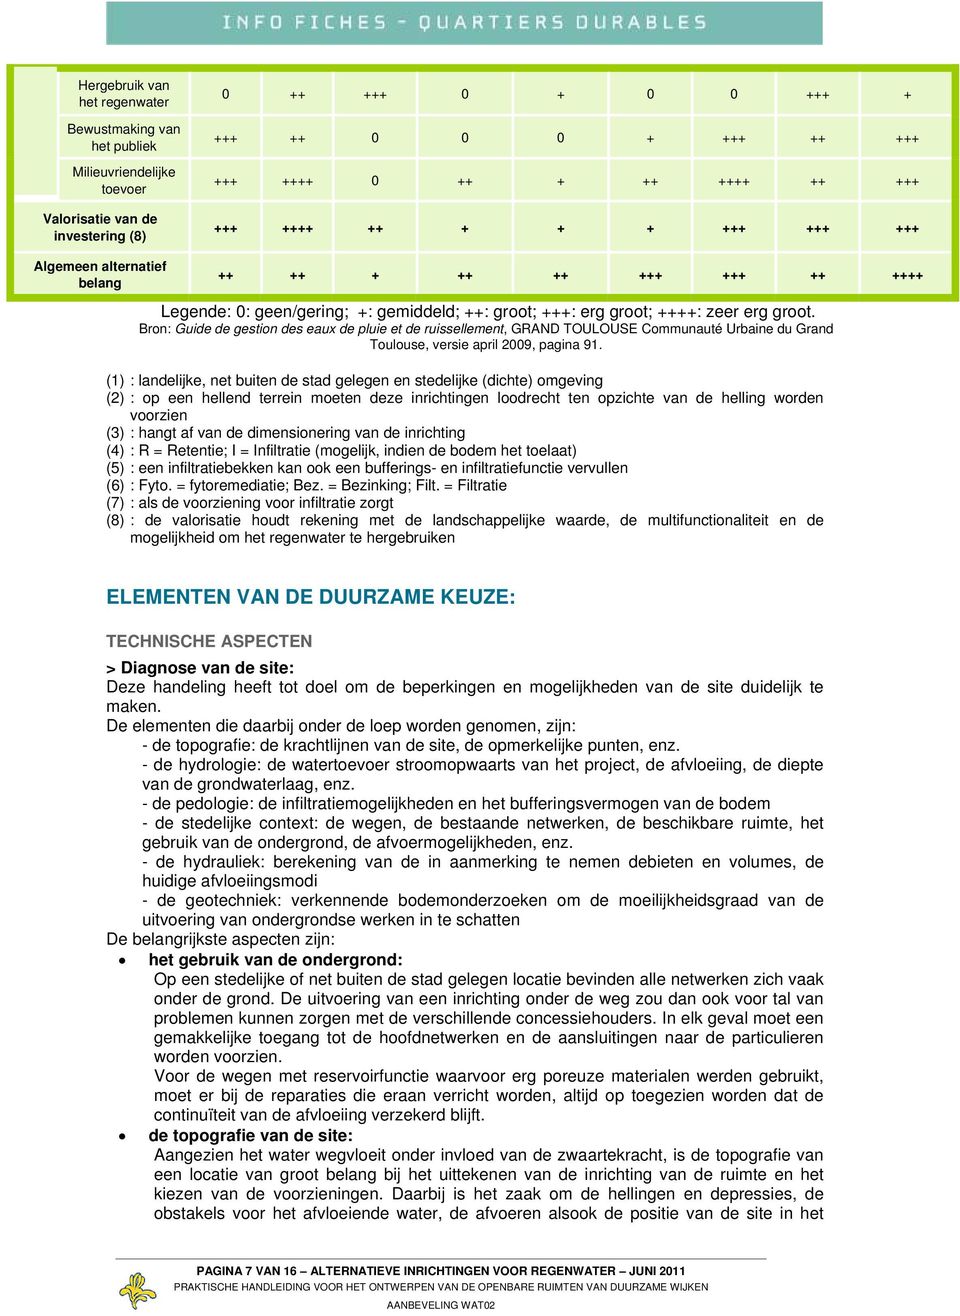 Bron: Guide de gestion des eaux de pluie et de ruissellement, GRAND TOULOUSE Communauté Urbaine du Grand Toulouse, versie april 2009, pagina 91.